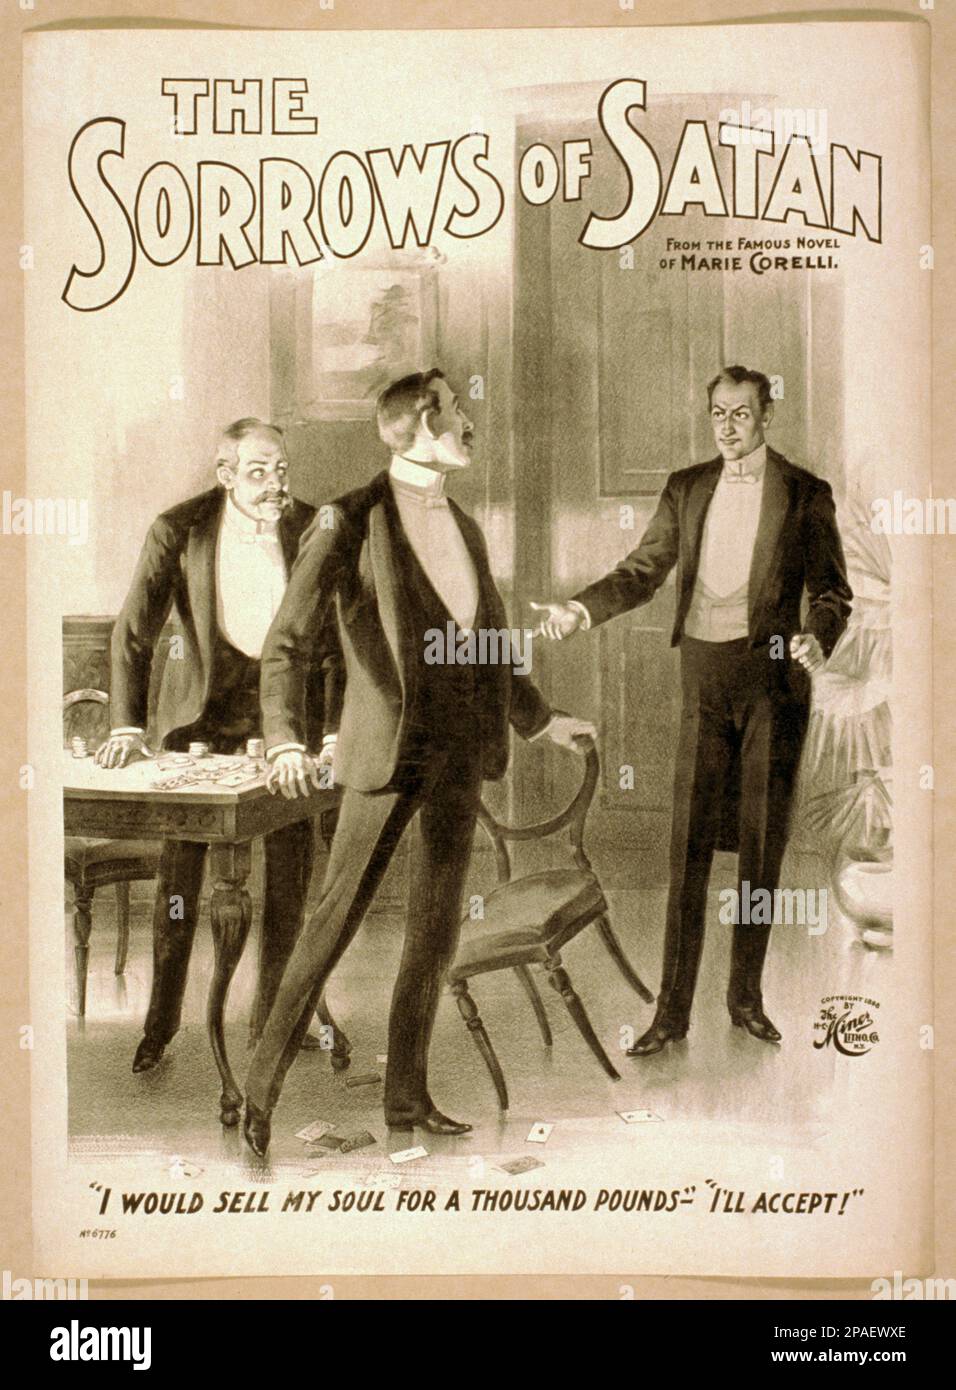 1900 ca , USA : il DOLORE DI SATANA , una rappresentazione teatrale di un romanzo della scrittrice MARIE CORELLI ( 1855 - 1924 ). - TEATRO - TEATRO - TEATRO - locandina - pubblicità poster - pubblicazione' - SCRITTRICE - SCRITTORE - LETTERATURA - LETTERATURA - letterato - triller - pulp fiction - ORRORE - GOTICO - BELLE EPOQUE ---- GBB Foto Stock